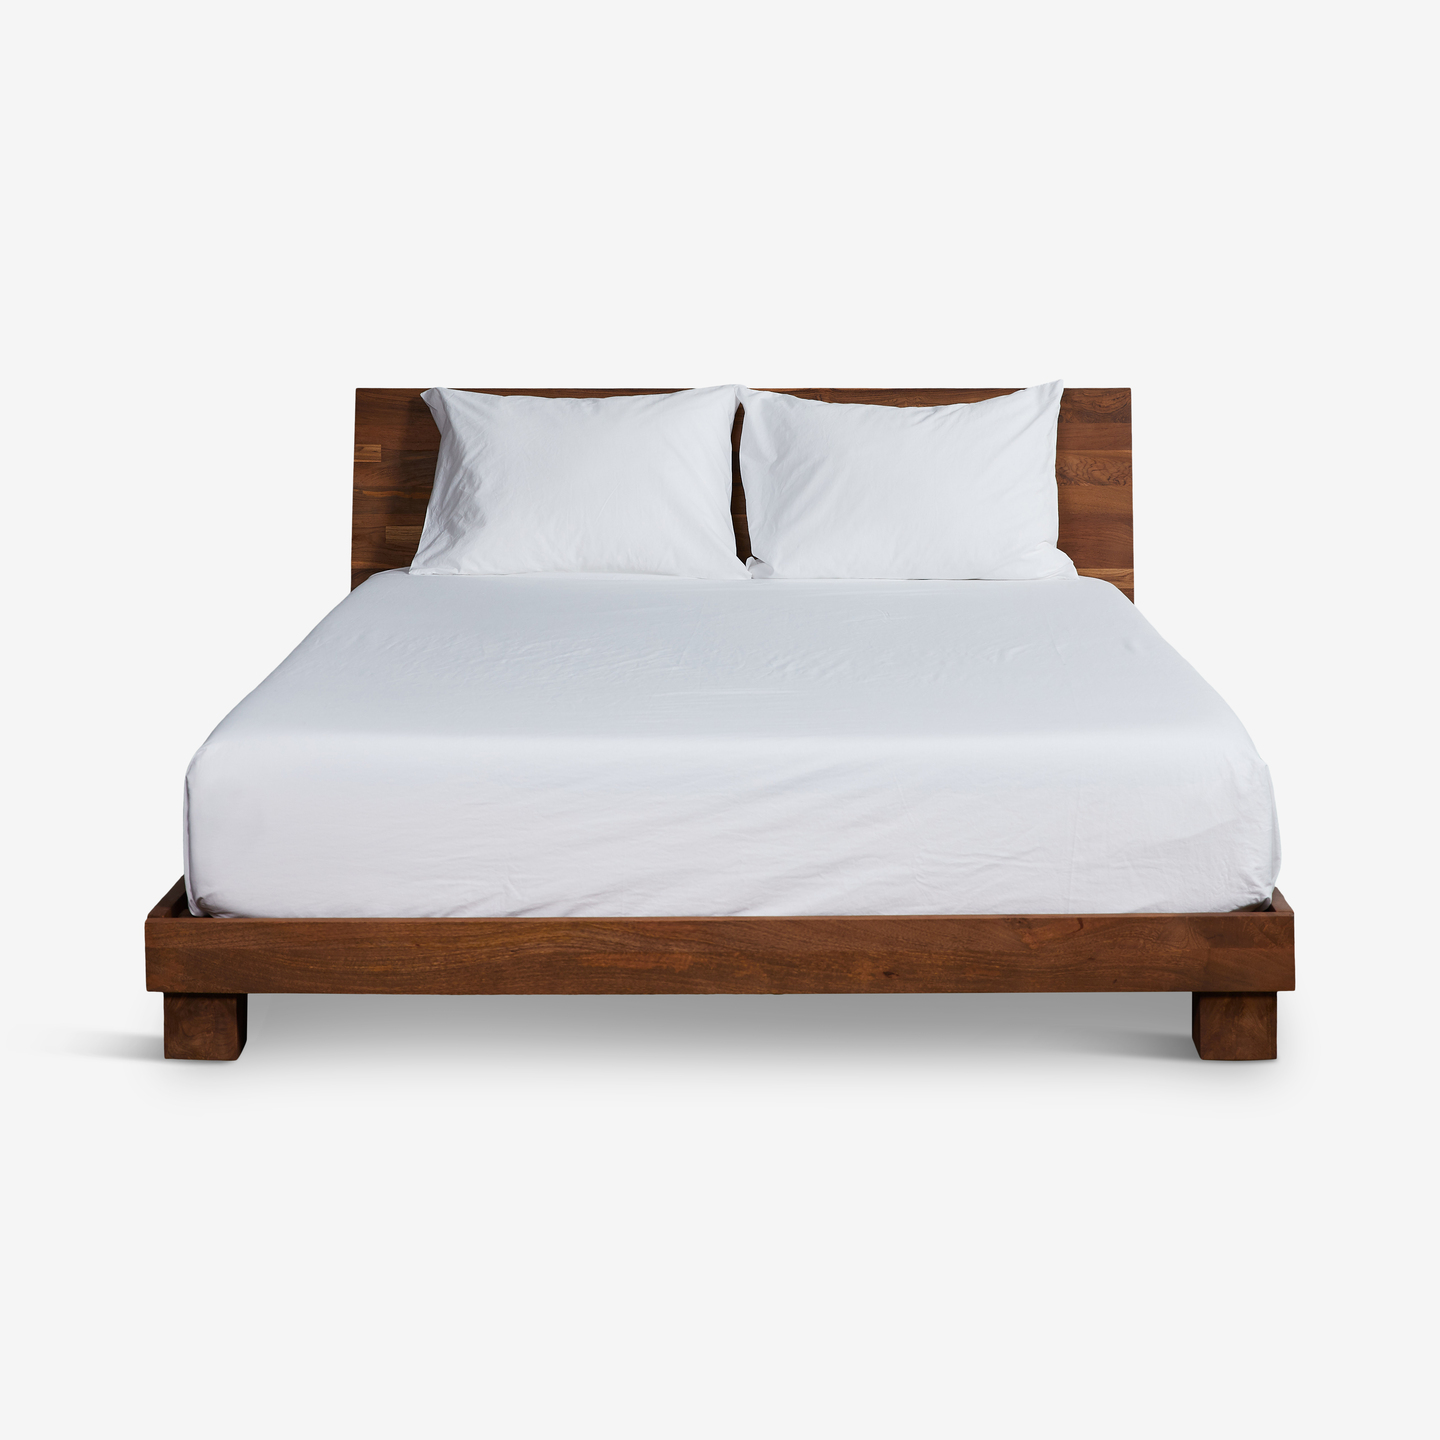 338_Dondra-Teak-Queen-Bed-_Flat-Frontbed-made-No-Duvet_Industrial_Bedroom-10 2020